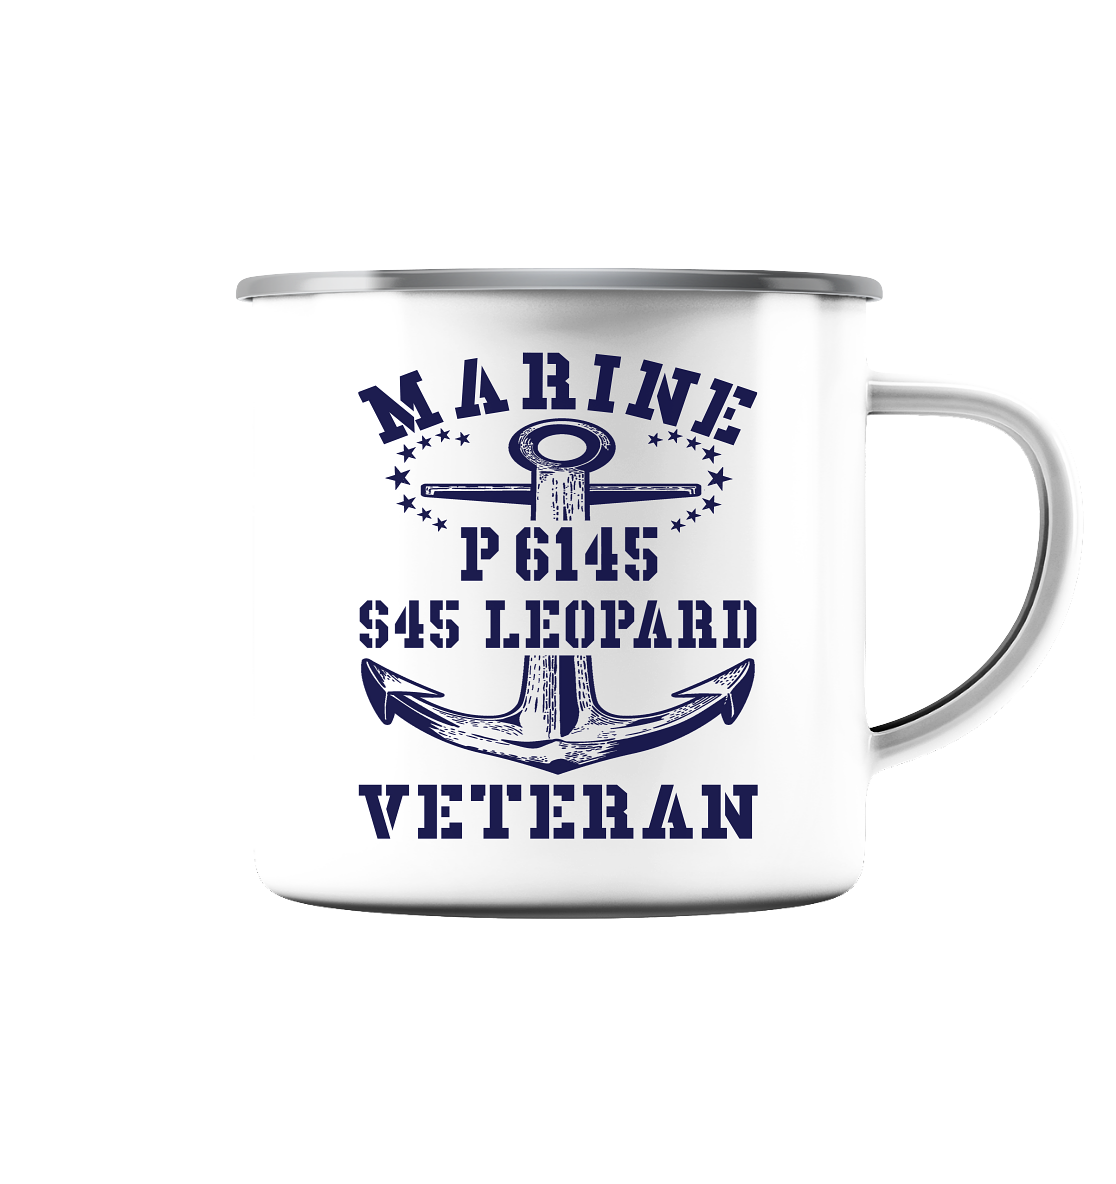 P6145 S45 LEOPARD Marine Veteran - Emaille Tasse (Silber)